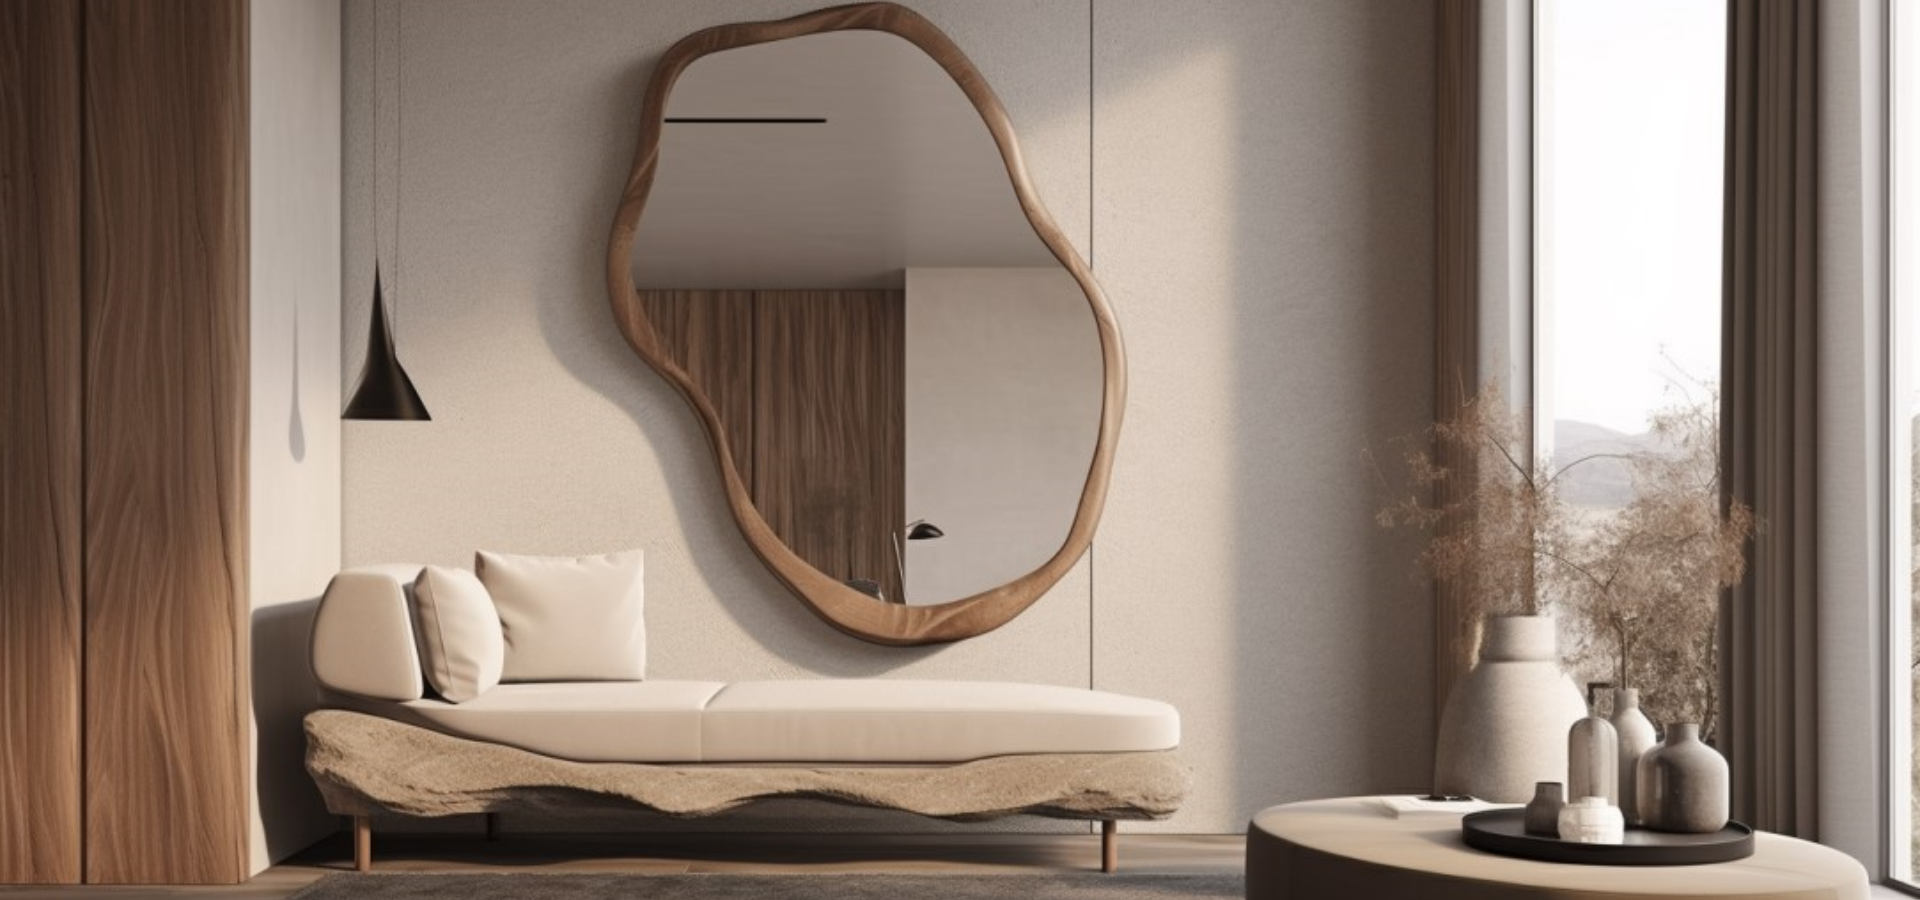 Duże drewniane lustro o nieregularnym kształcie wiszące nad sofą. Niski stolik kawowy, na nim ułożone dekoracyjne wazony. Wnętrze urządzone w nowoczesnym stylu w odcieniach brązu.